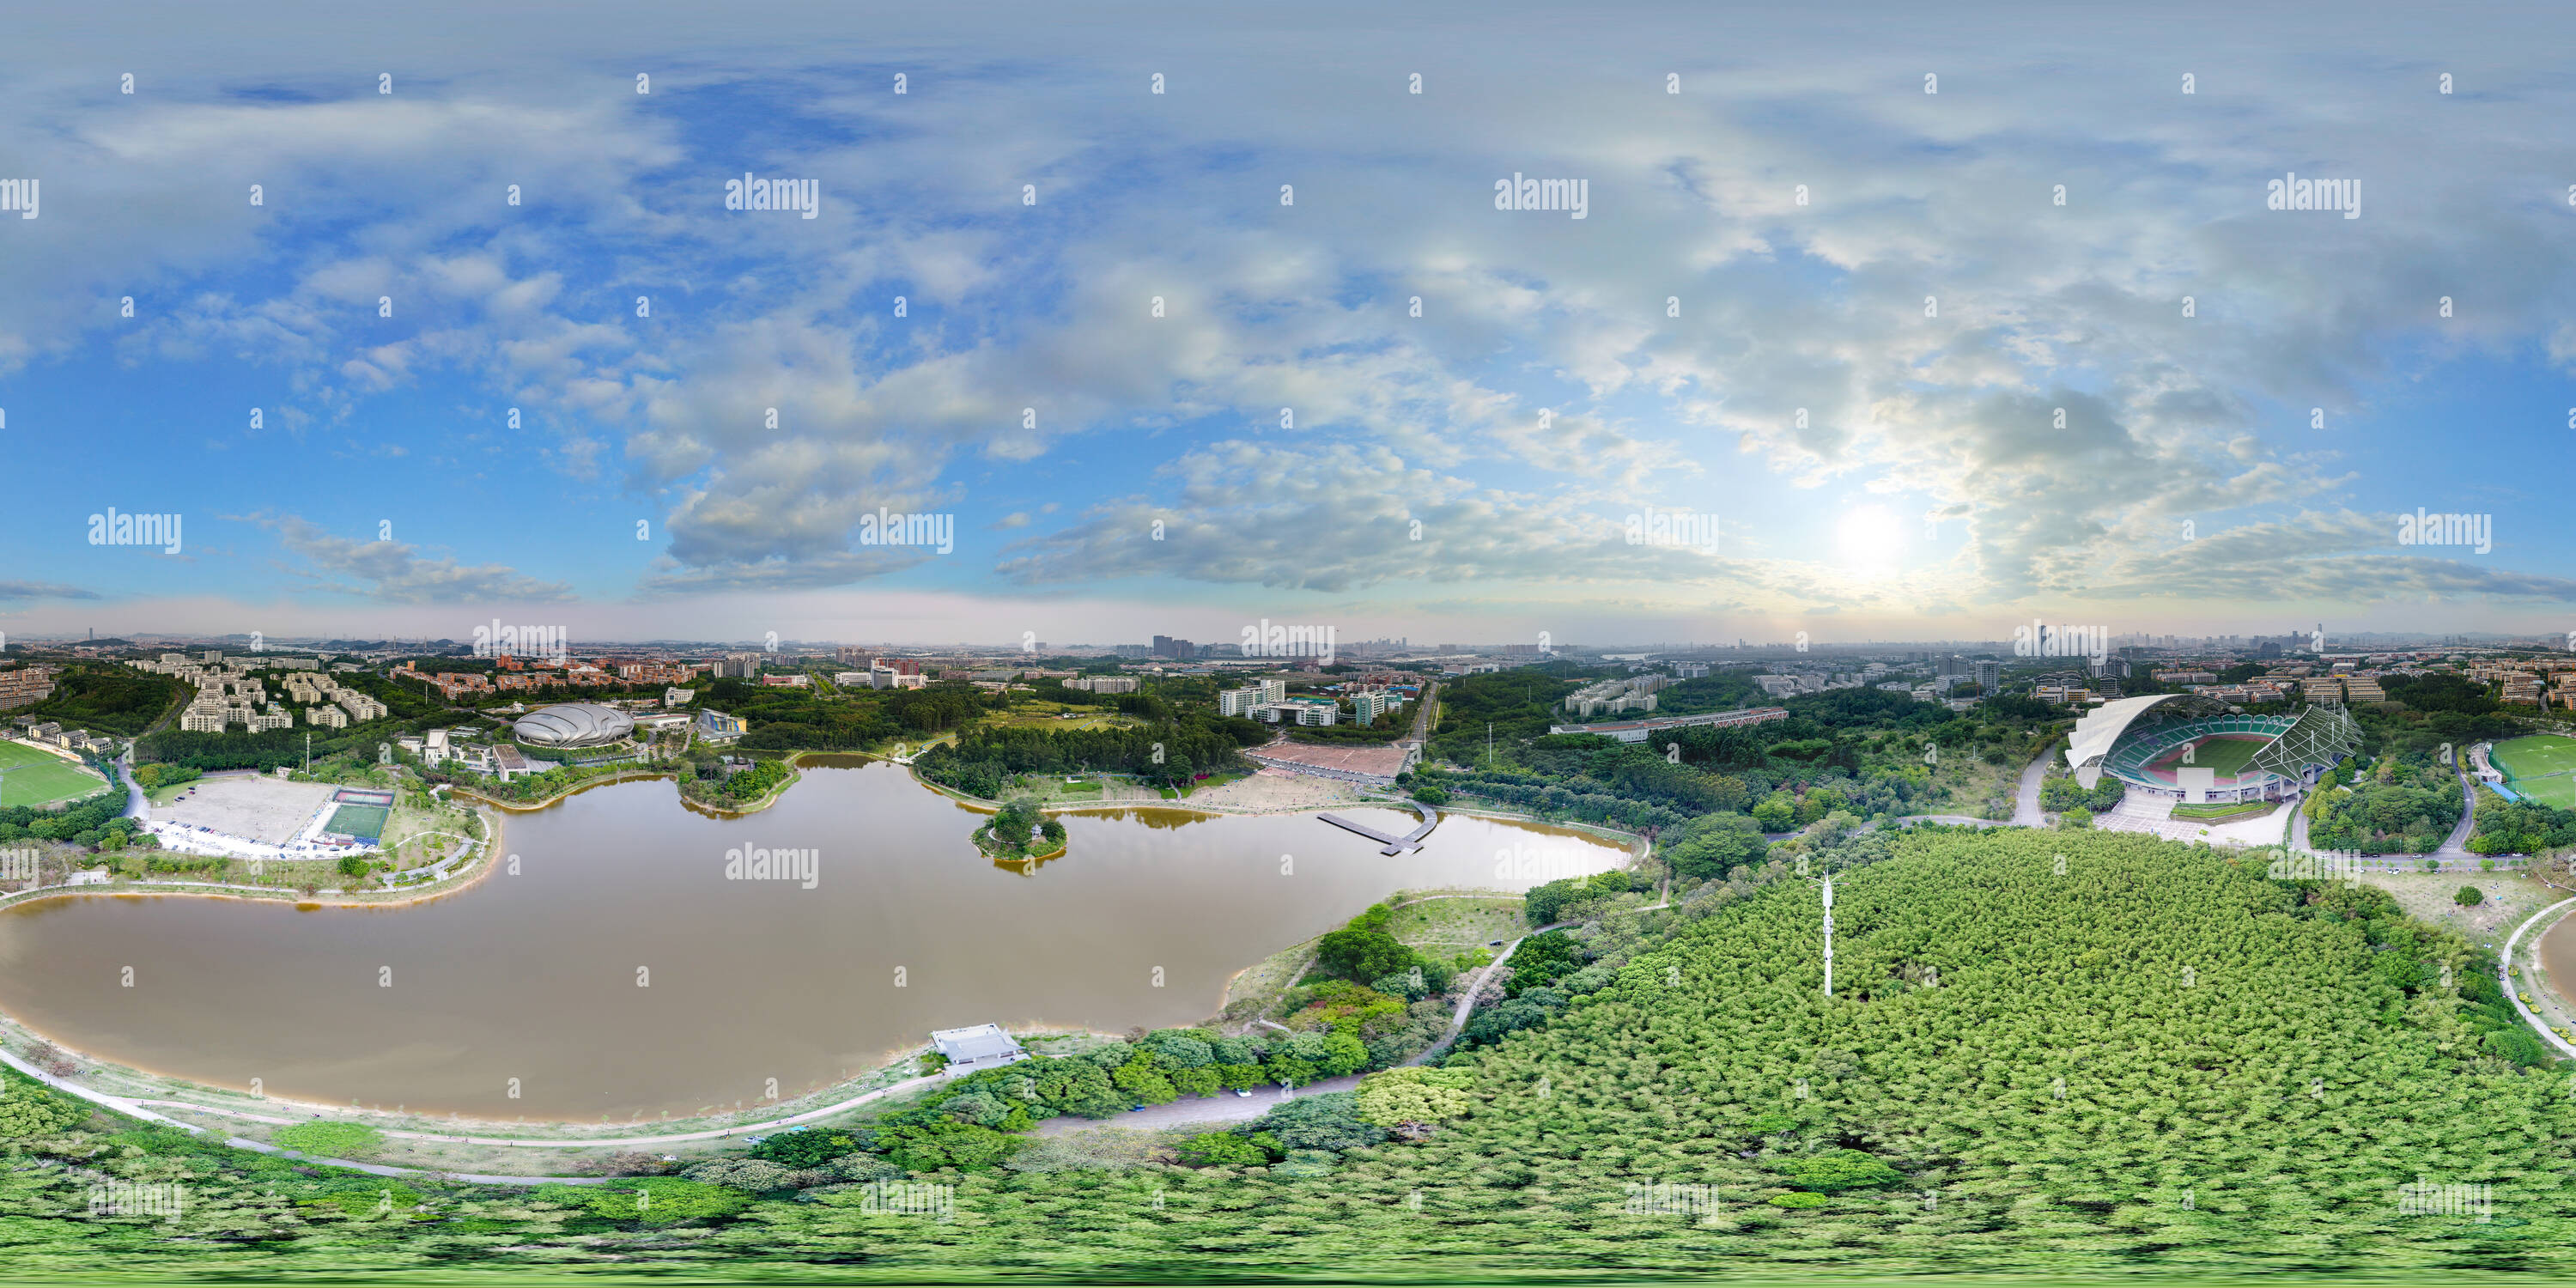 360 Grad Panorama Ansicht von Guangzhou University Town Center Park.